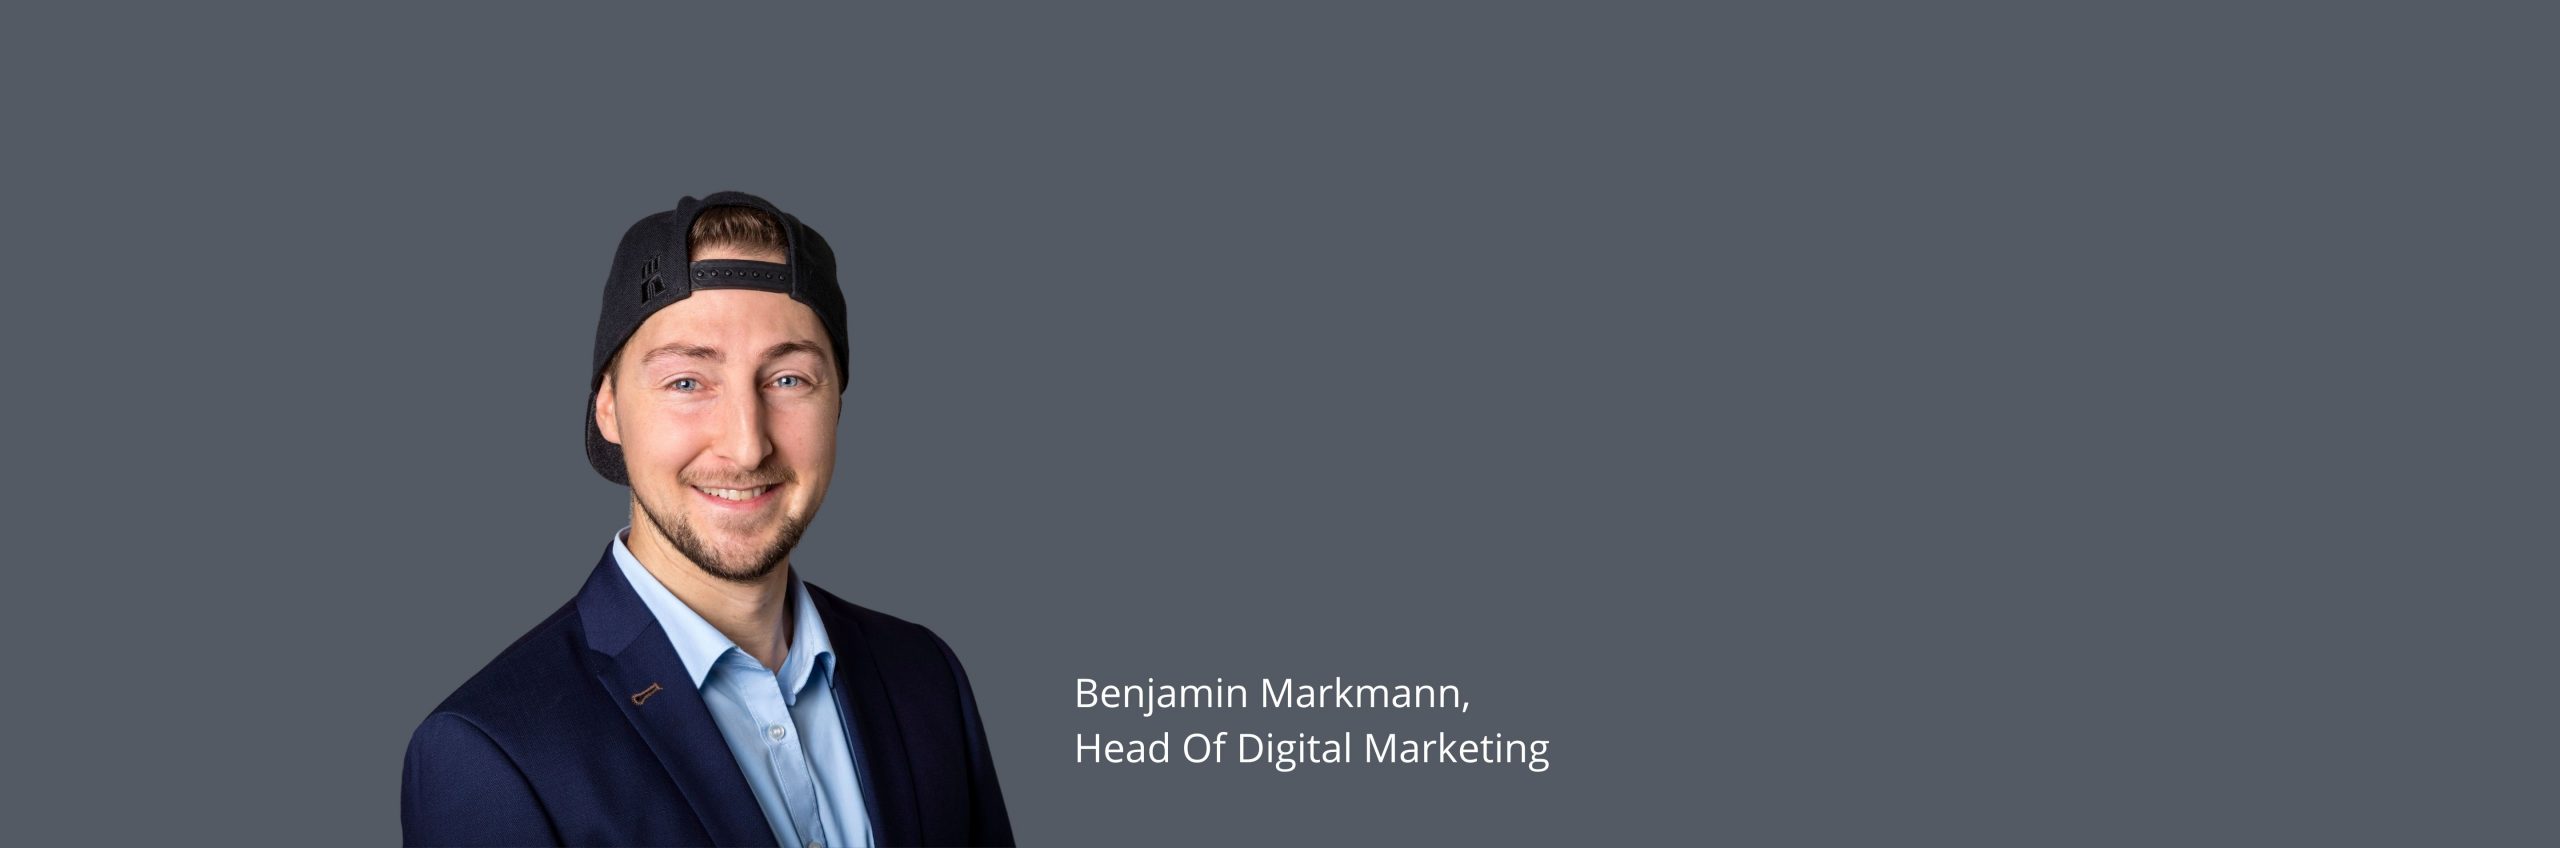 Markmann-Mobil-Website-Header